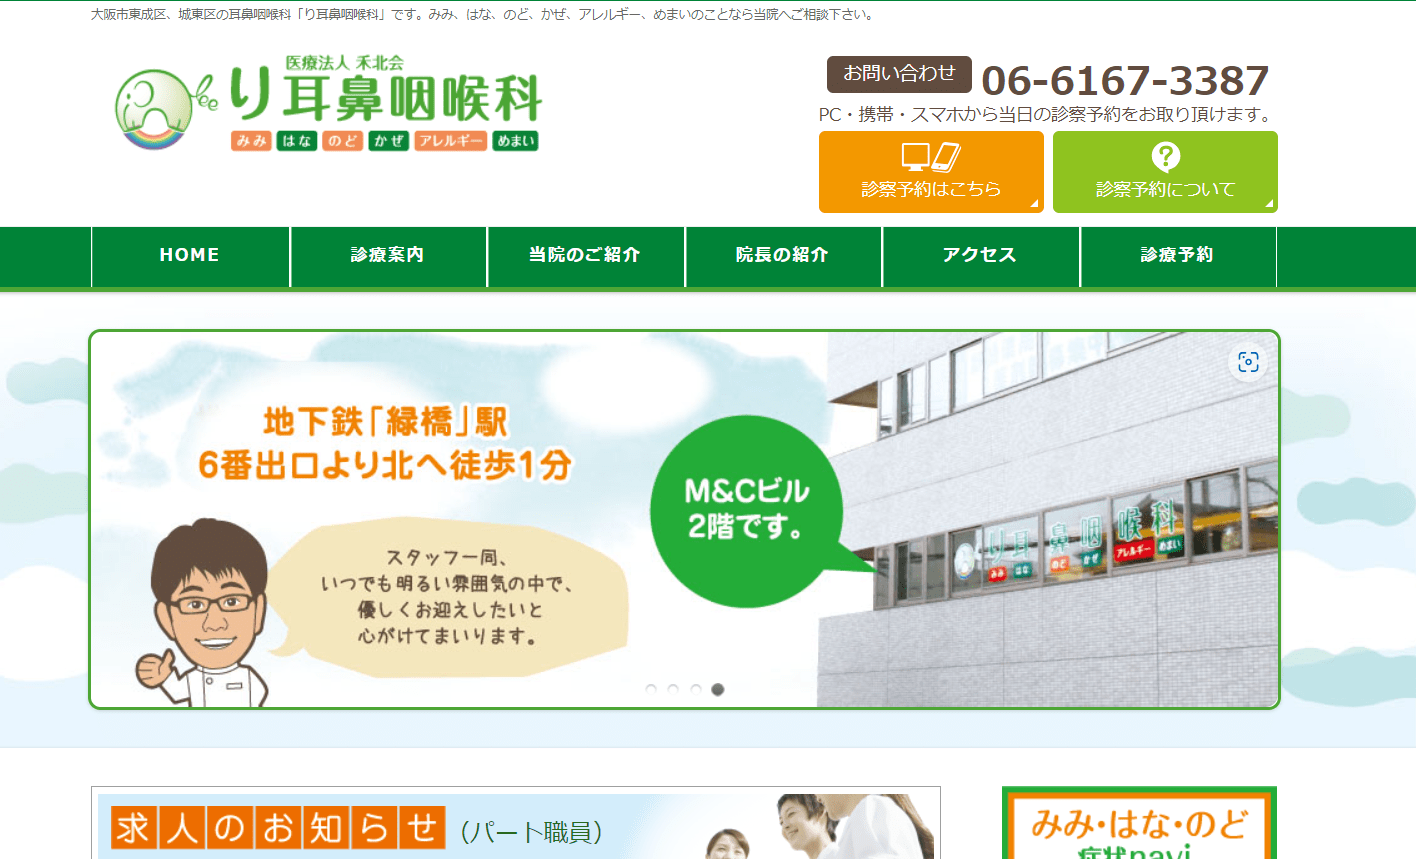 大阪市で評判の耳鼻咽喉科クリニック10選 り耳鼻咽喉科